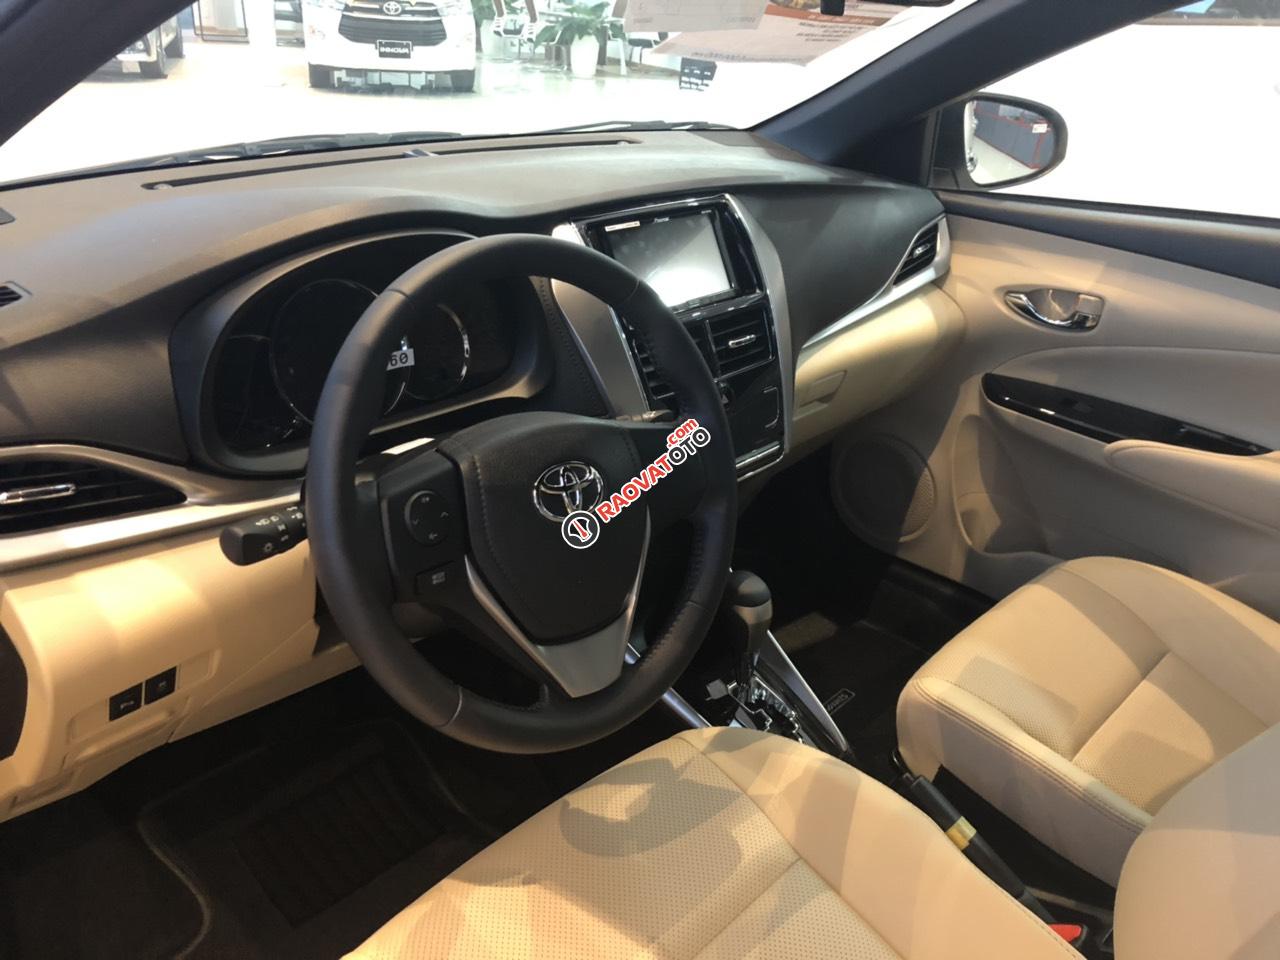 Bán Toyota Yaris 2019 giá tốt - khuyến mãi hấp dẫn - giao xe ngay - 0909 399 882-2